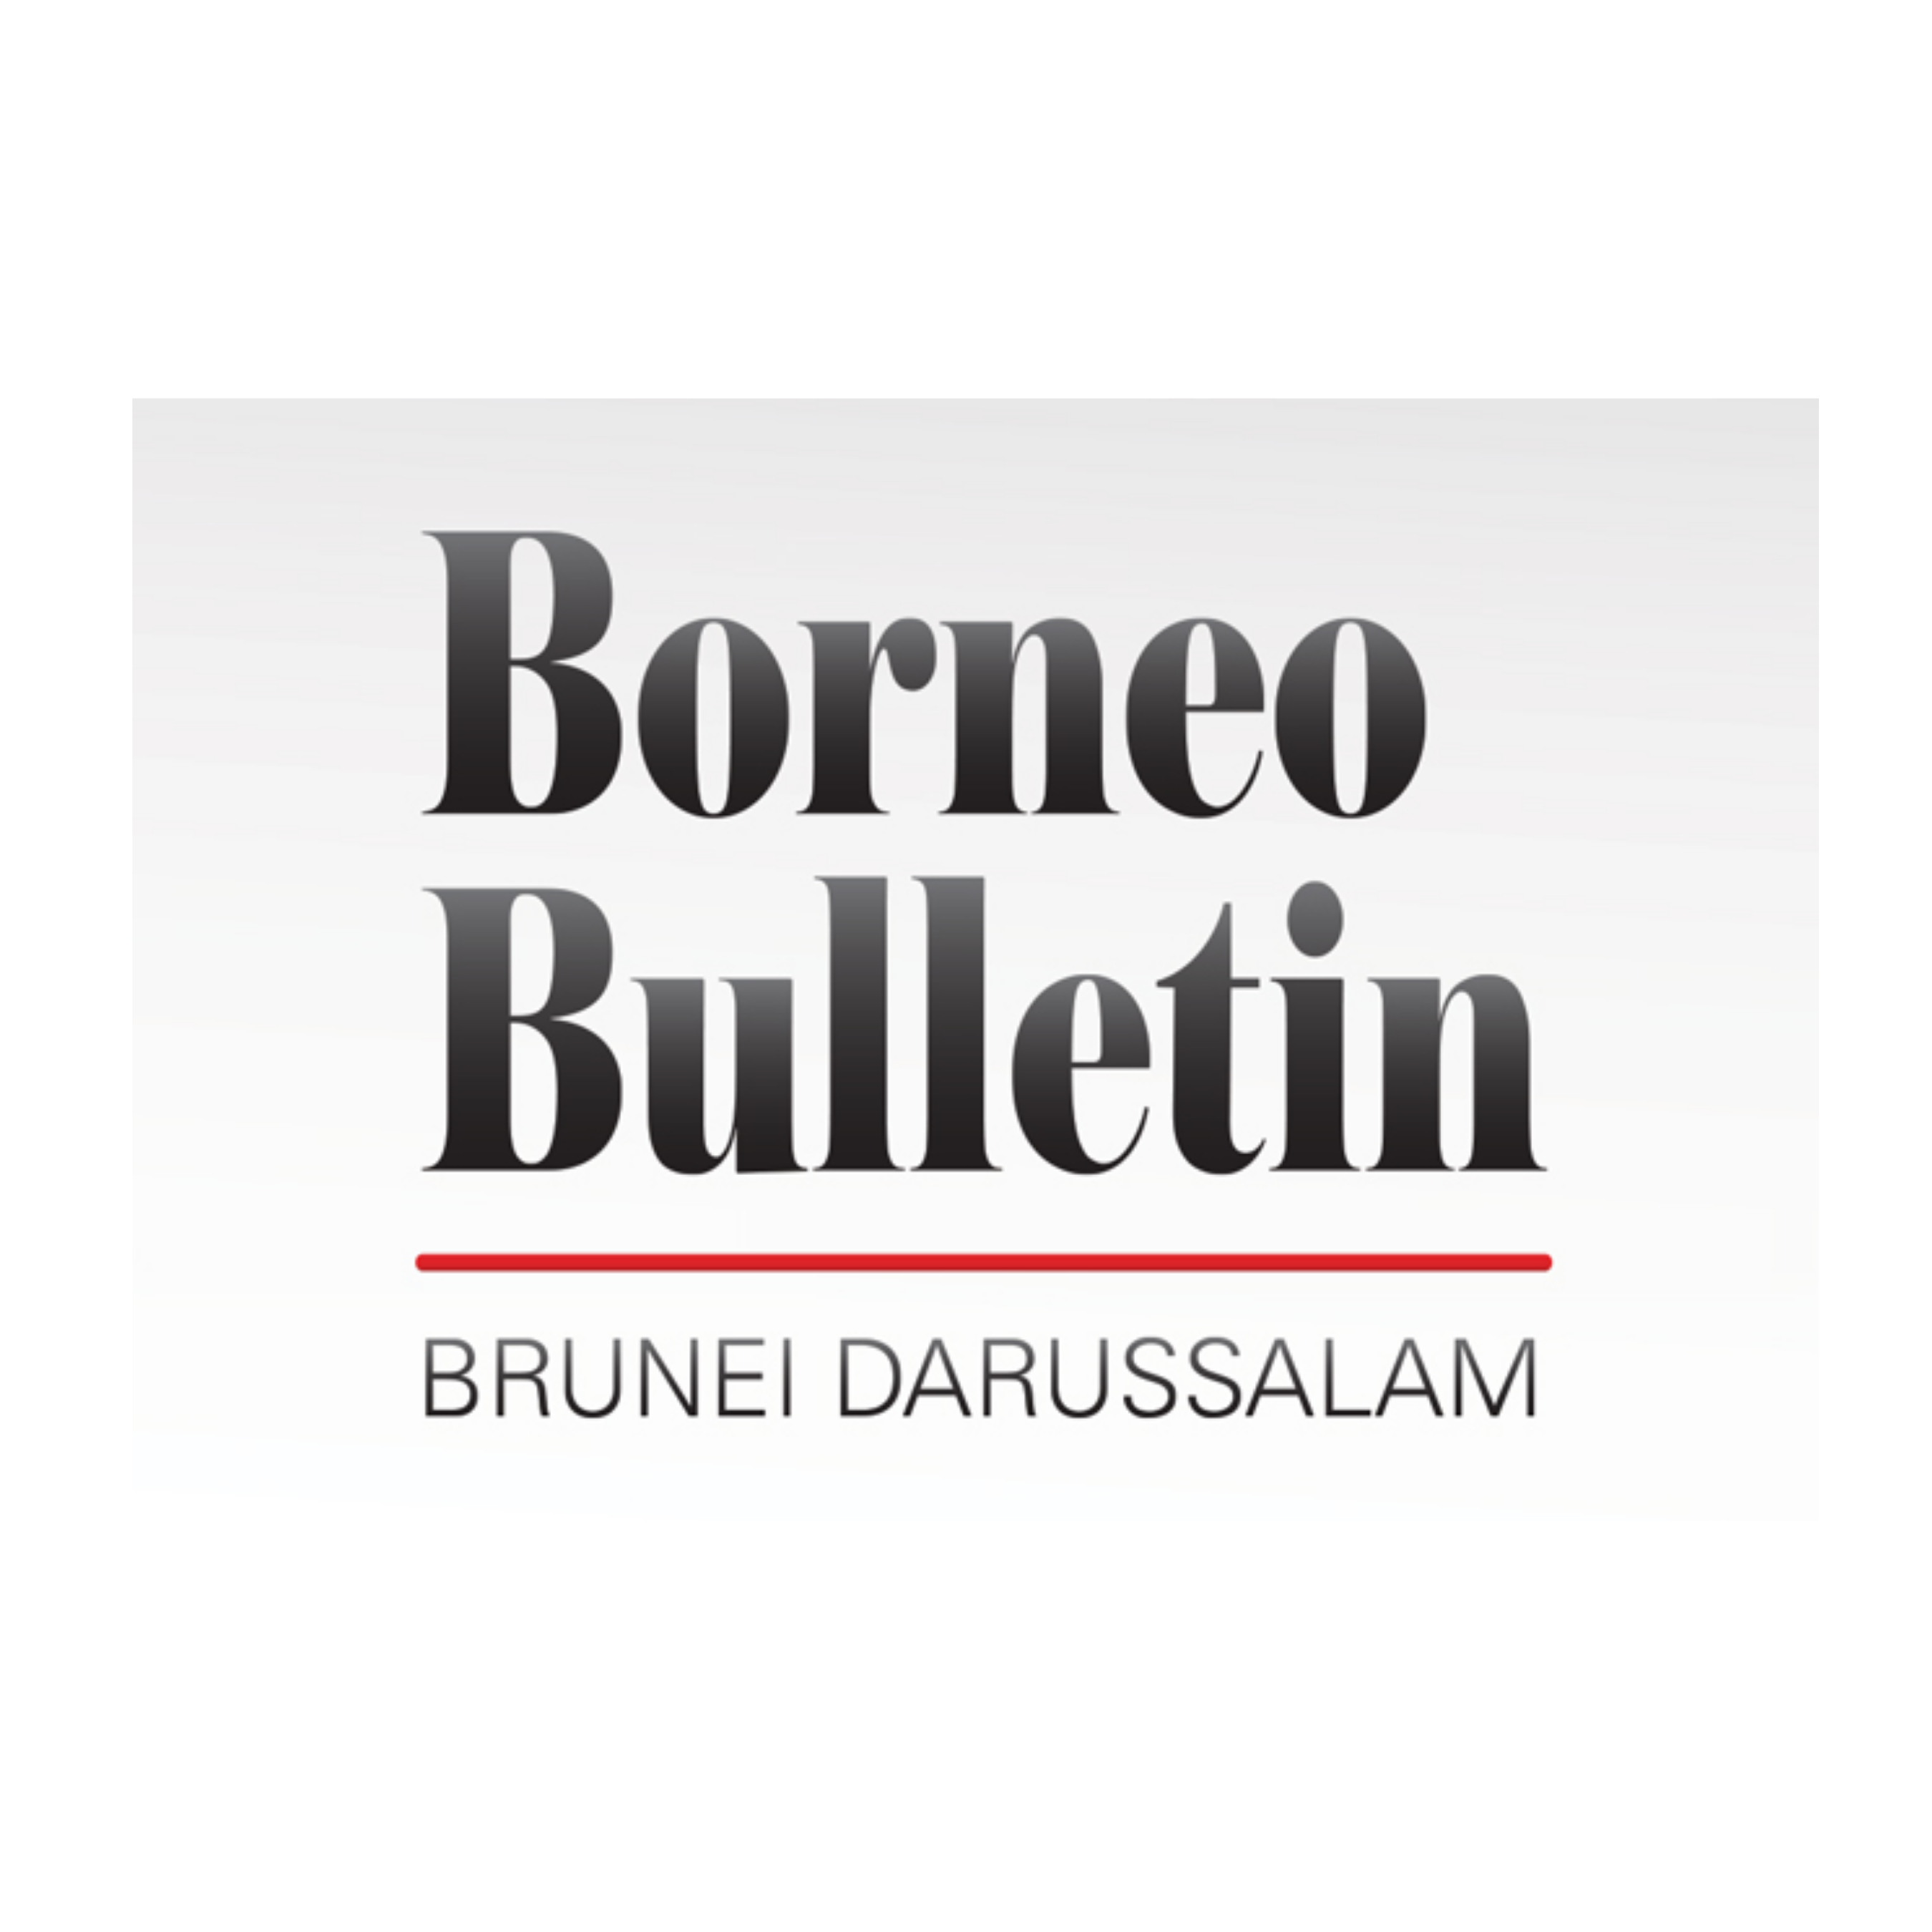 borneo bulletin